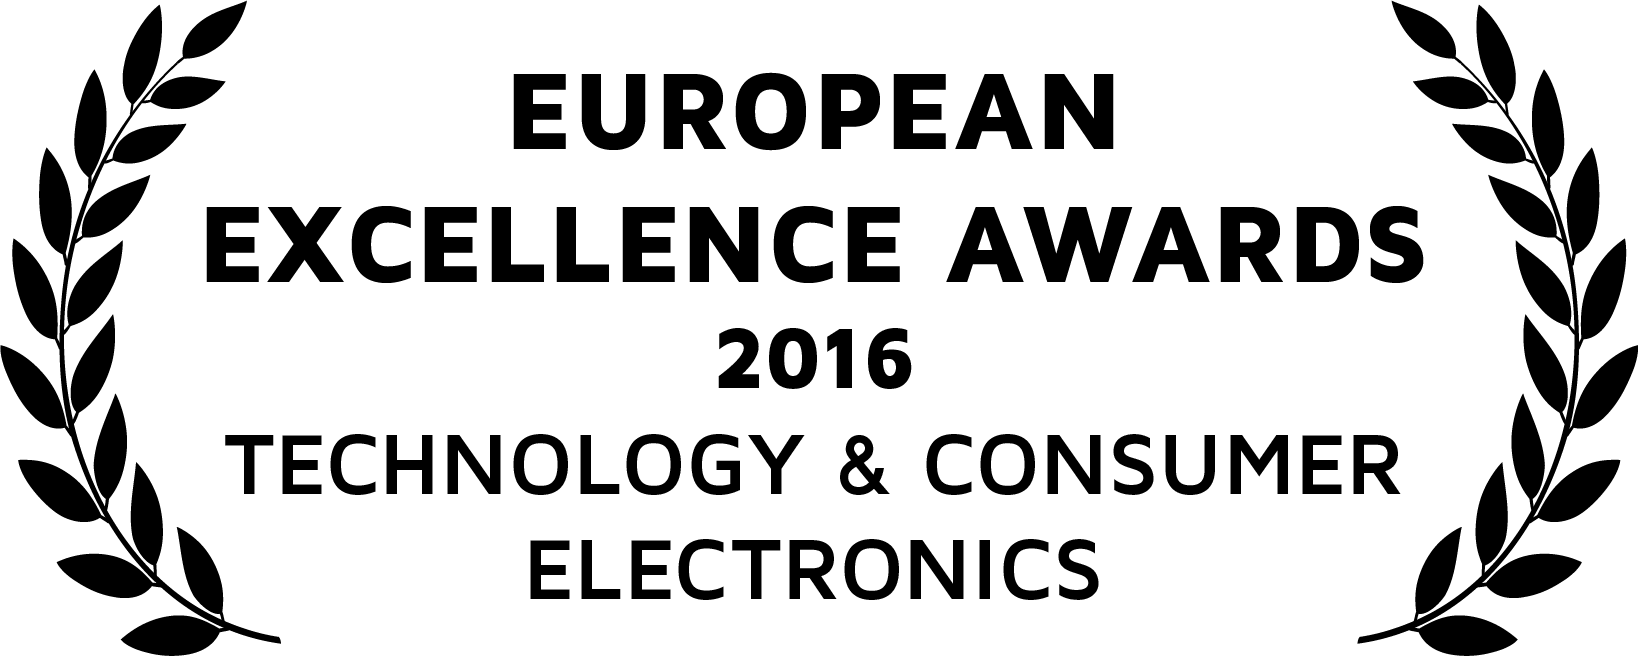 European Excellence Awards logo